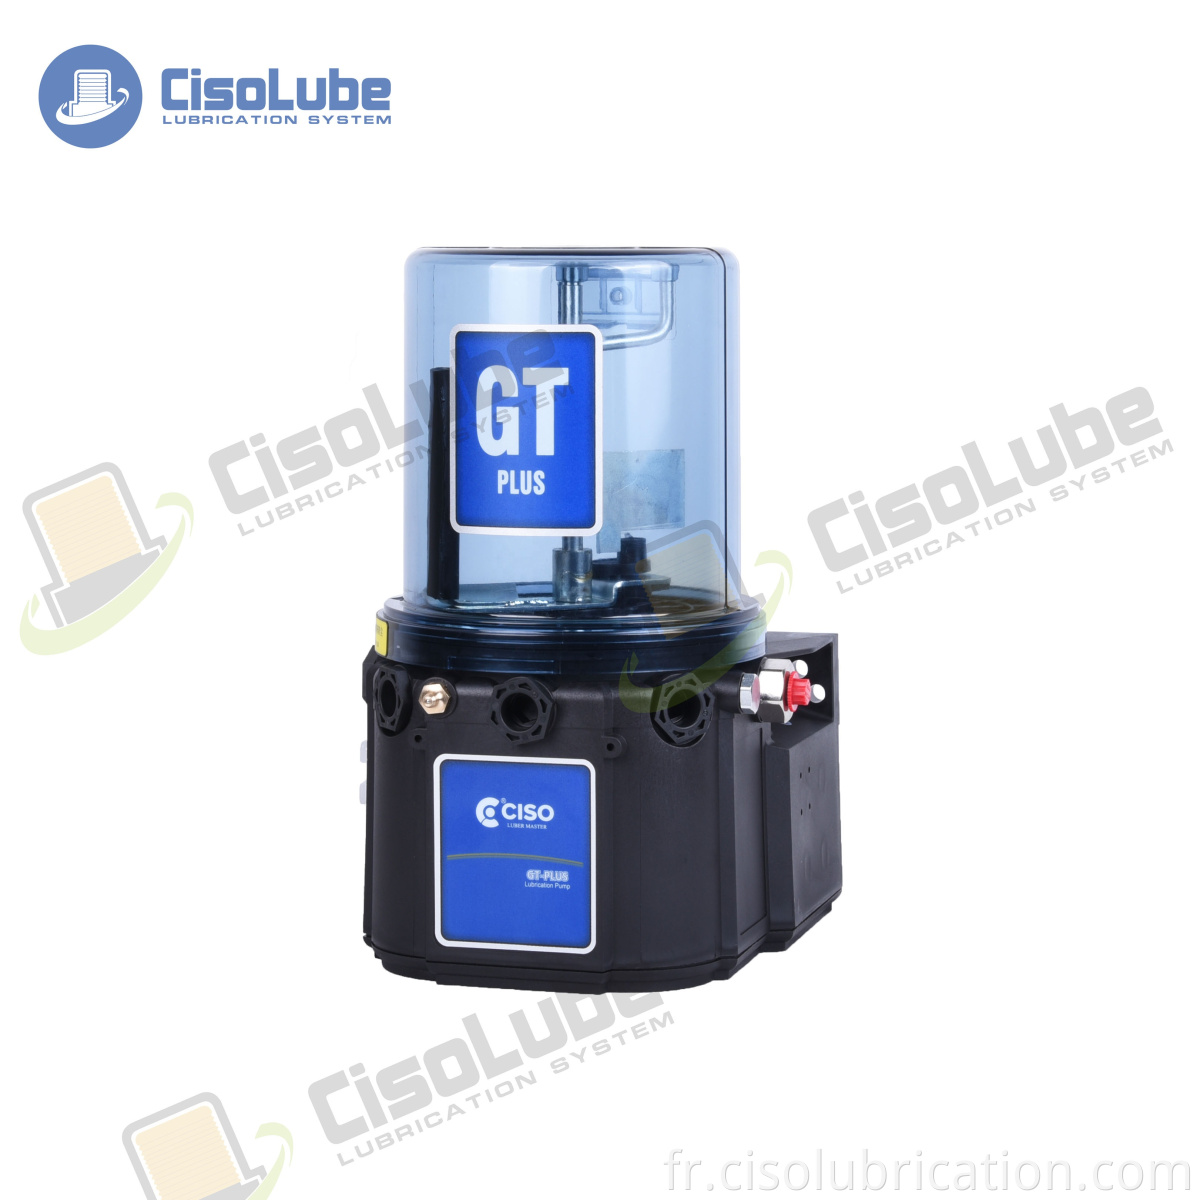 Ciso Factory vend la pompe électrique de lubrification à graisse automatique de Chine GT-plus